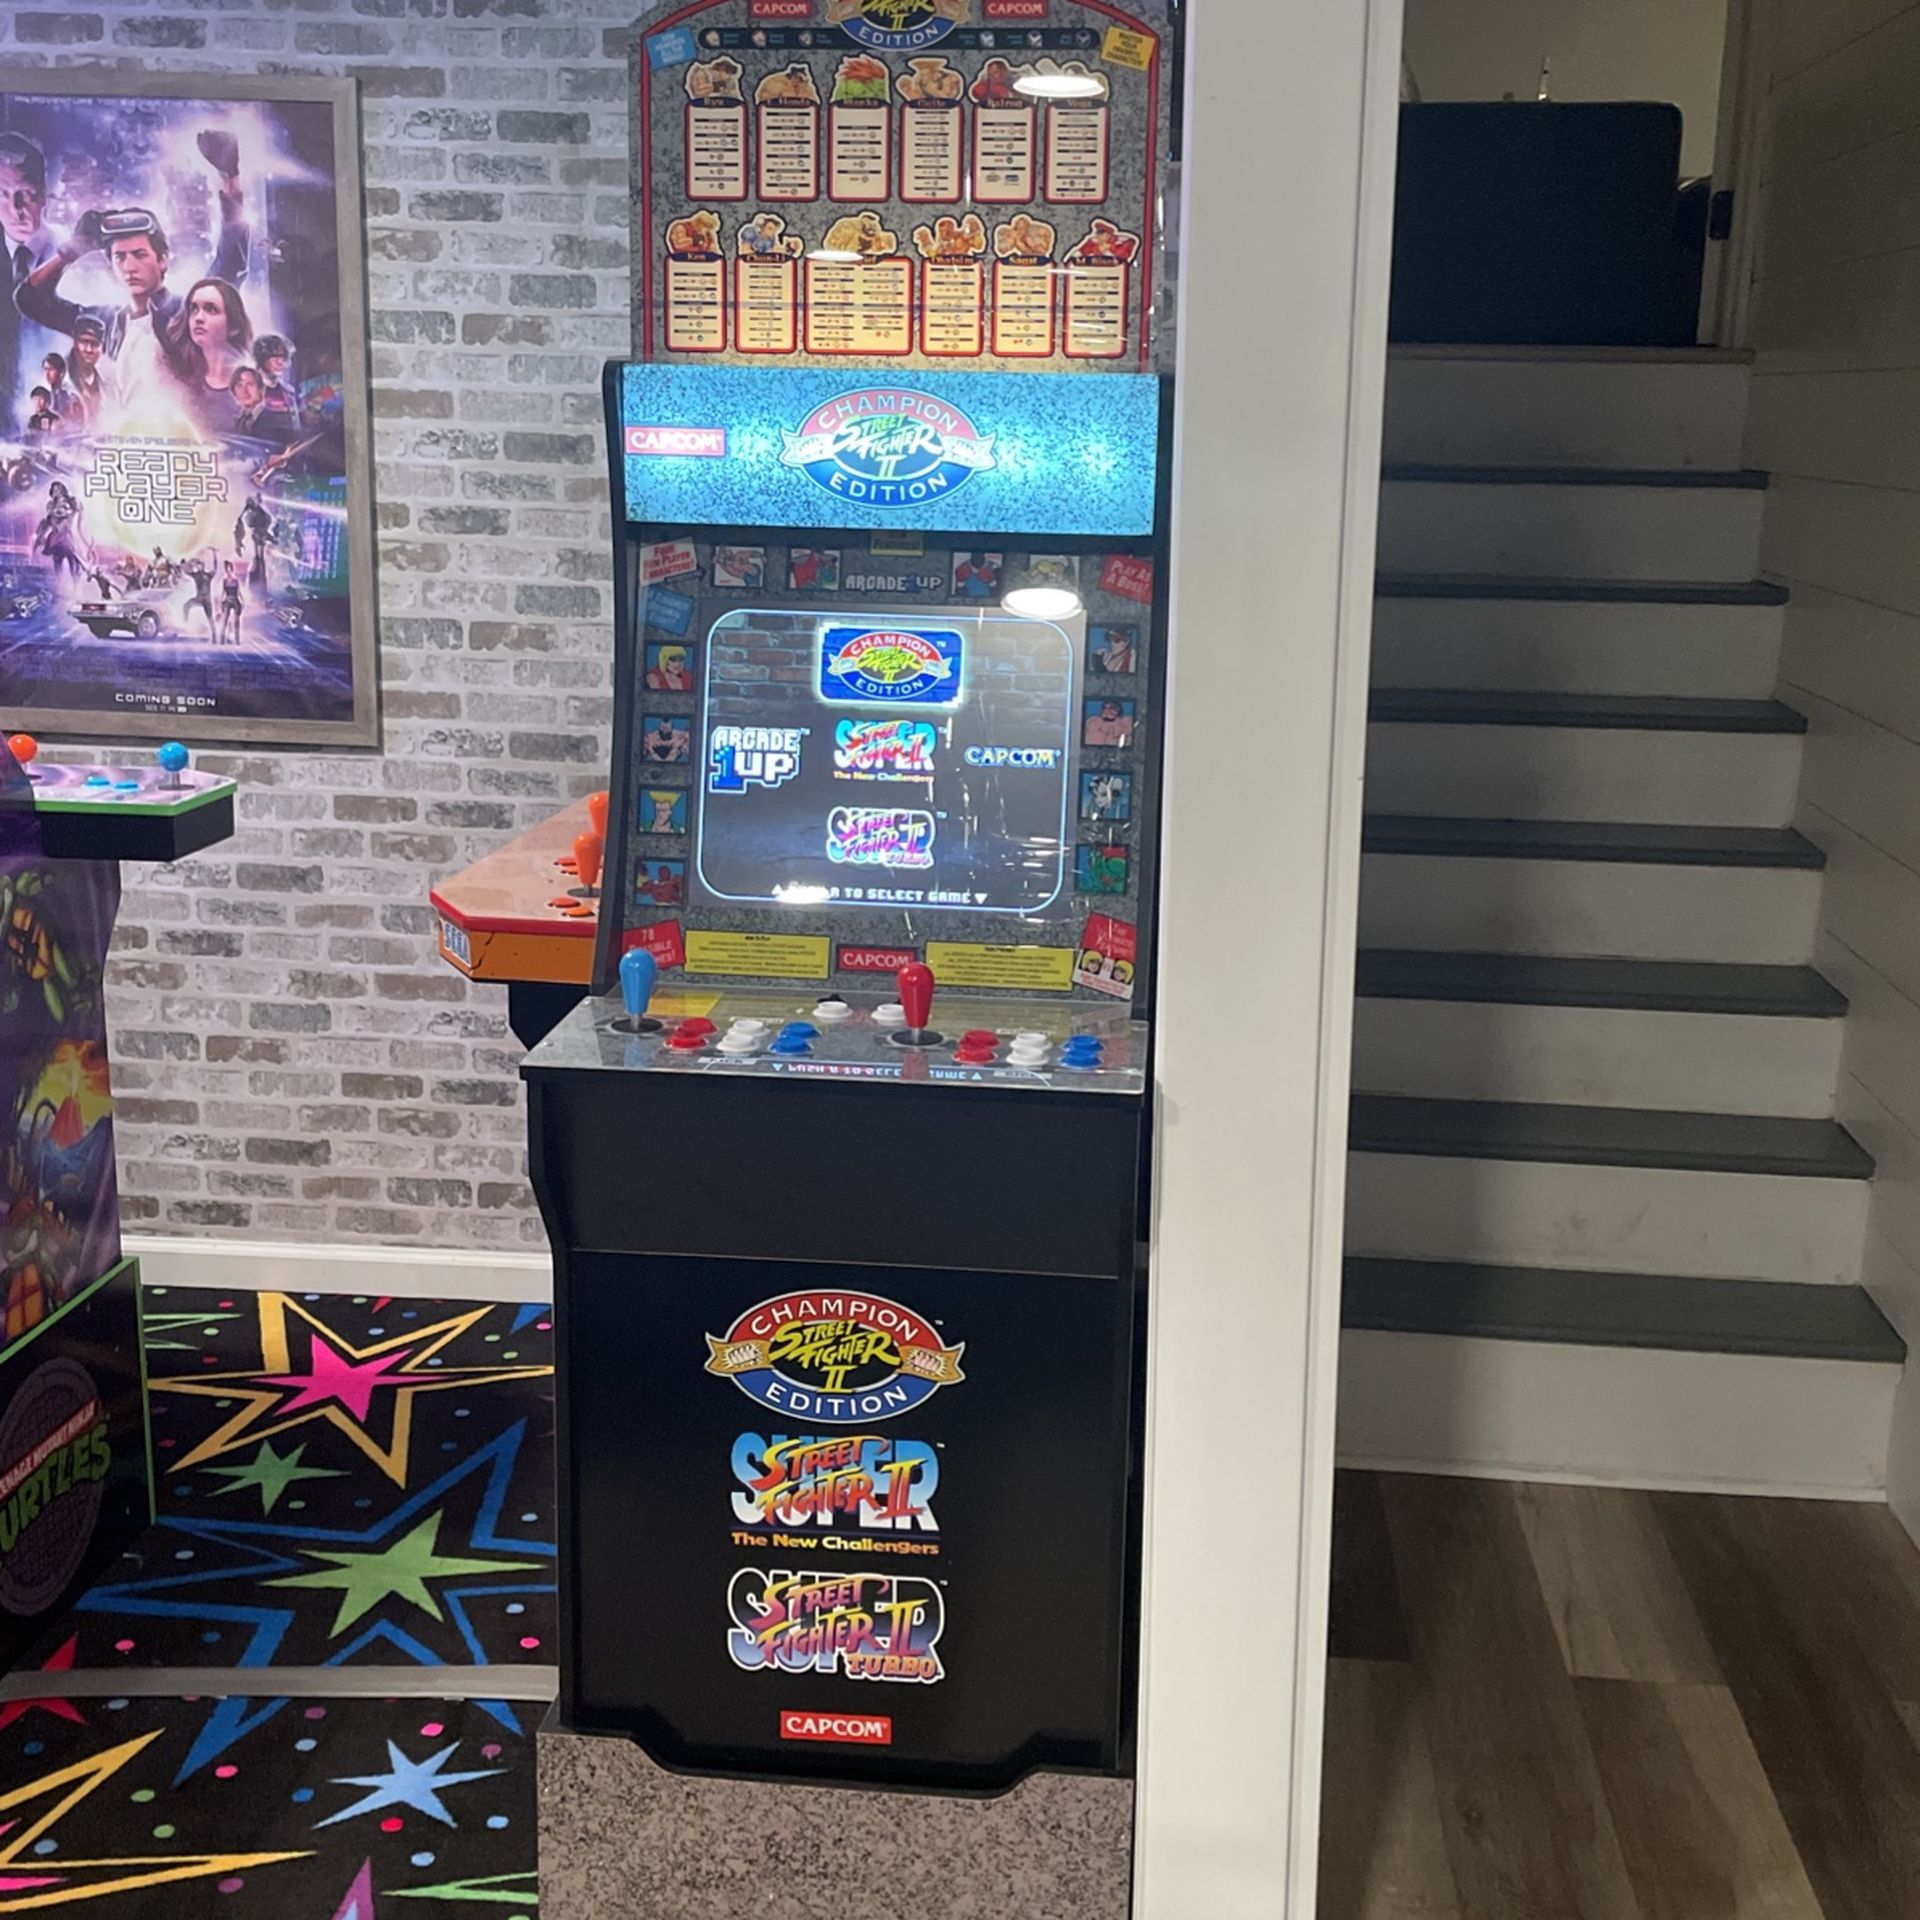 Arcade1up - Street Fighter OG